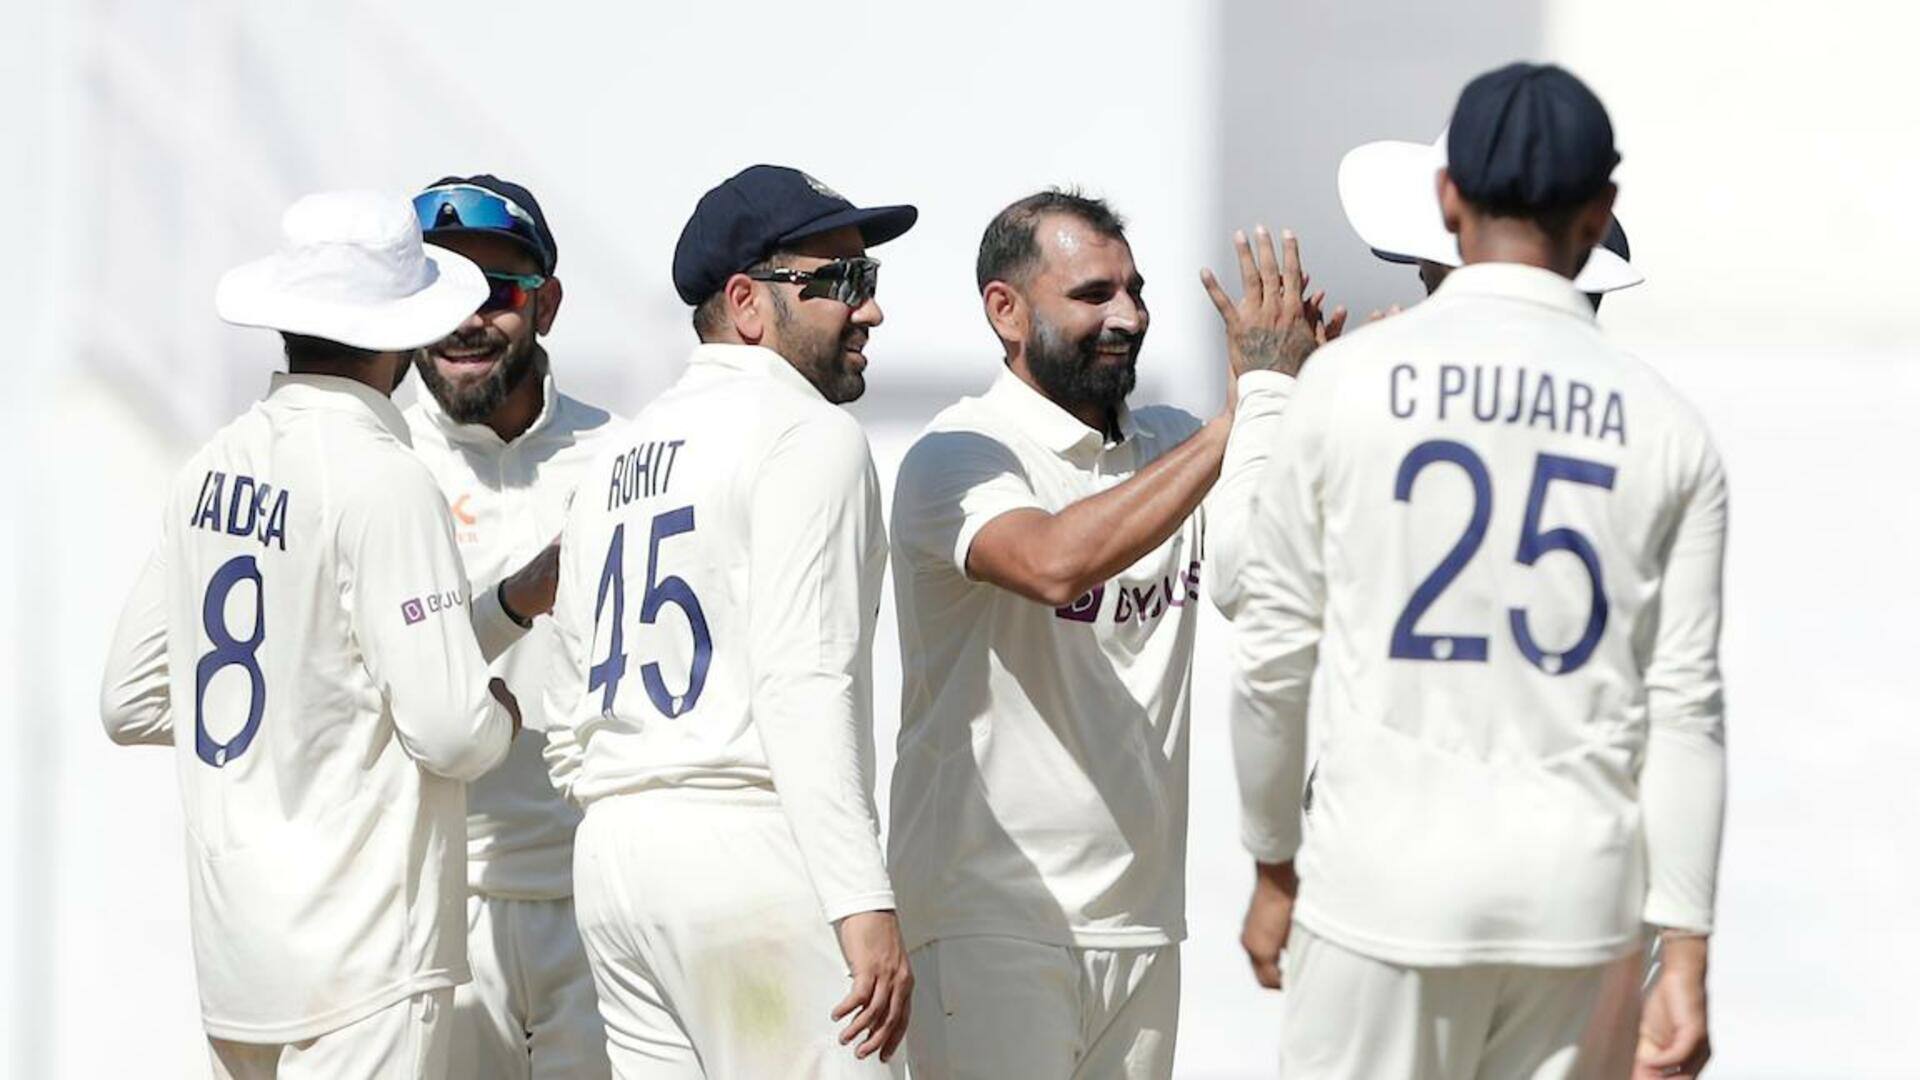 ICC ने टेस्ट रैंकिंग की गलती पर मांगी माफी, भारत को बताया था शीर्ष टीम